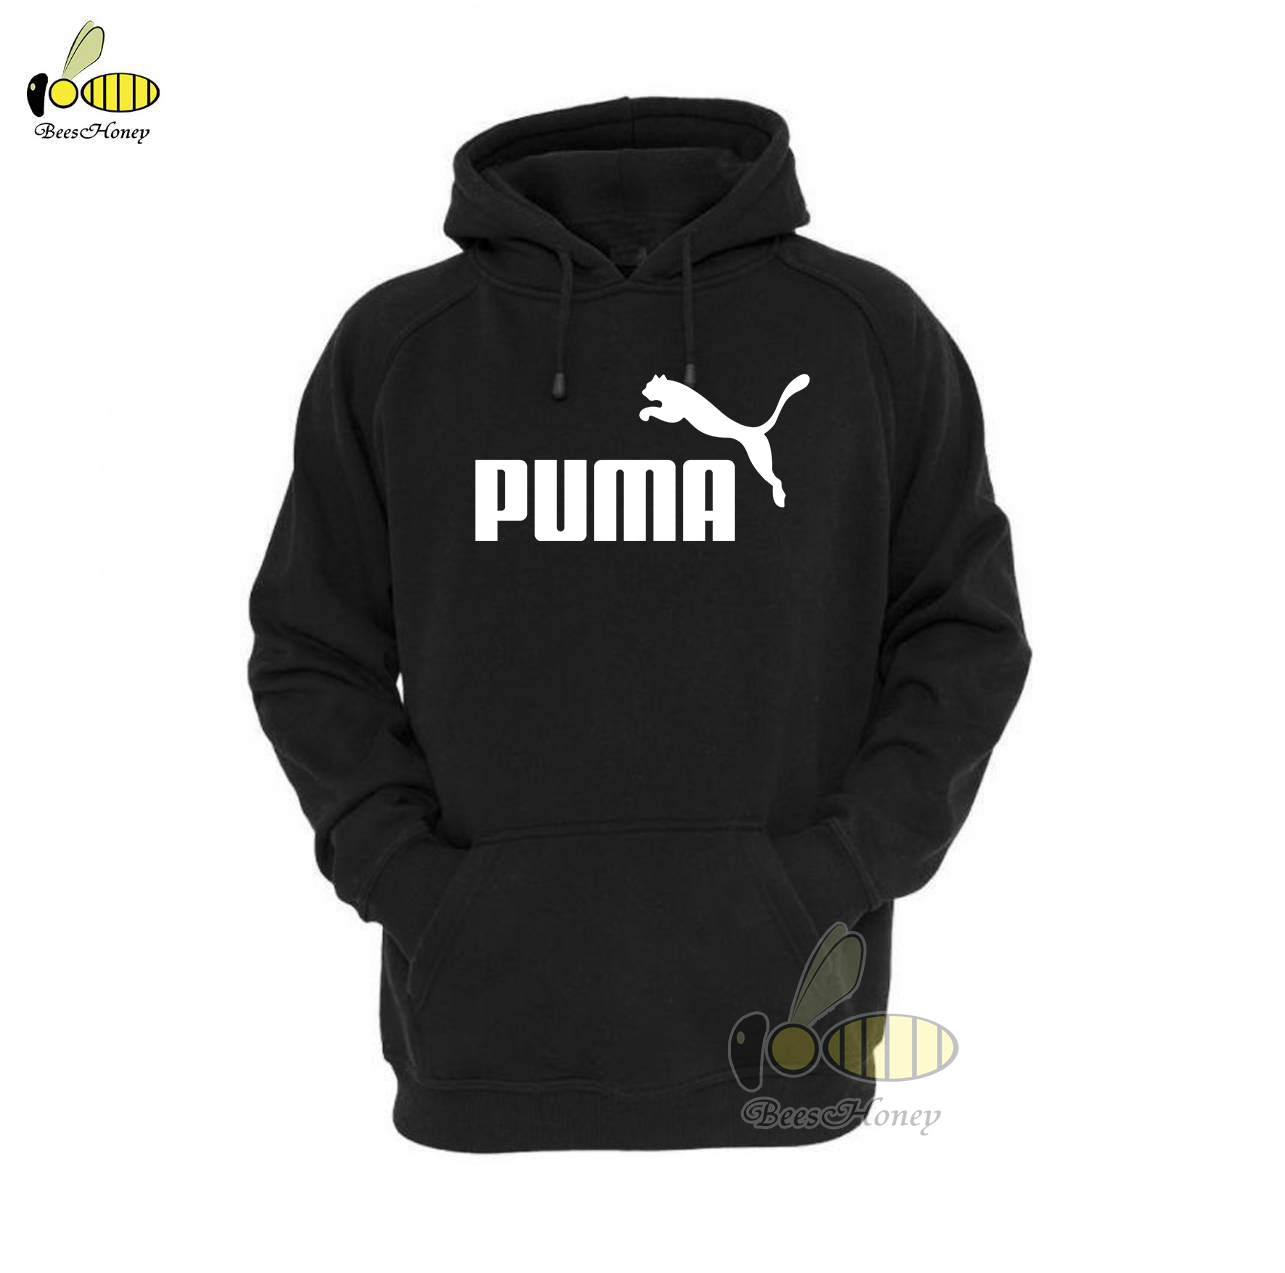 Puma เสื้อกันหนาว เสื้อฮู้ด แบบซิป-สวม งาน H&M เกรดA งานดีแน่นอน หนานุ่มใส่สบาย Hoodie แจ็คเก็ต